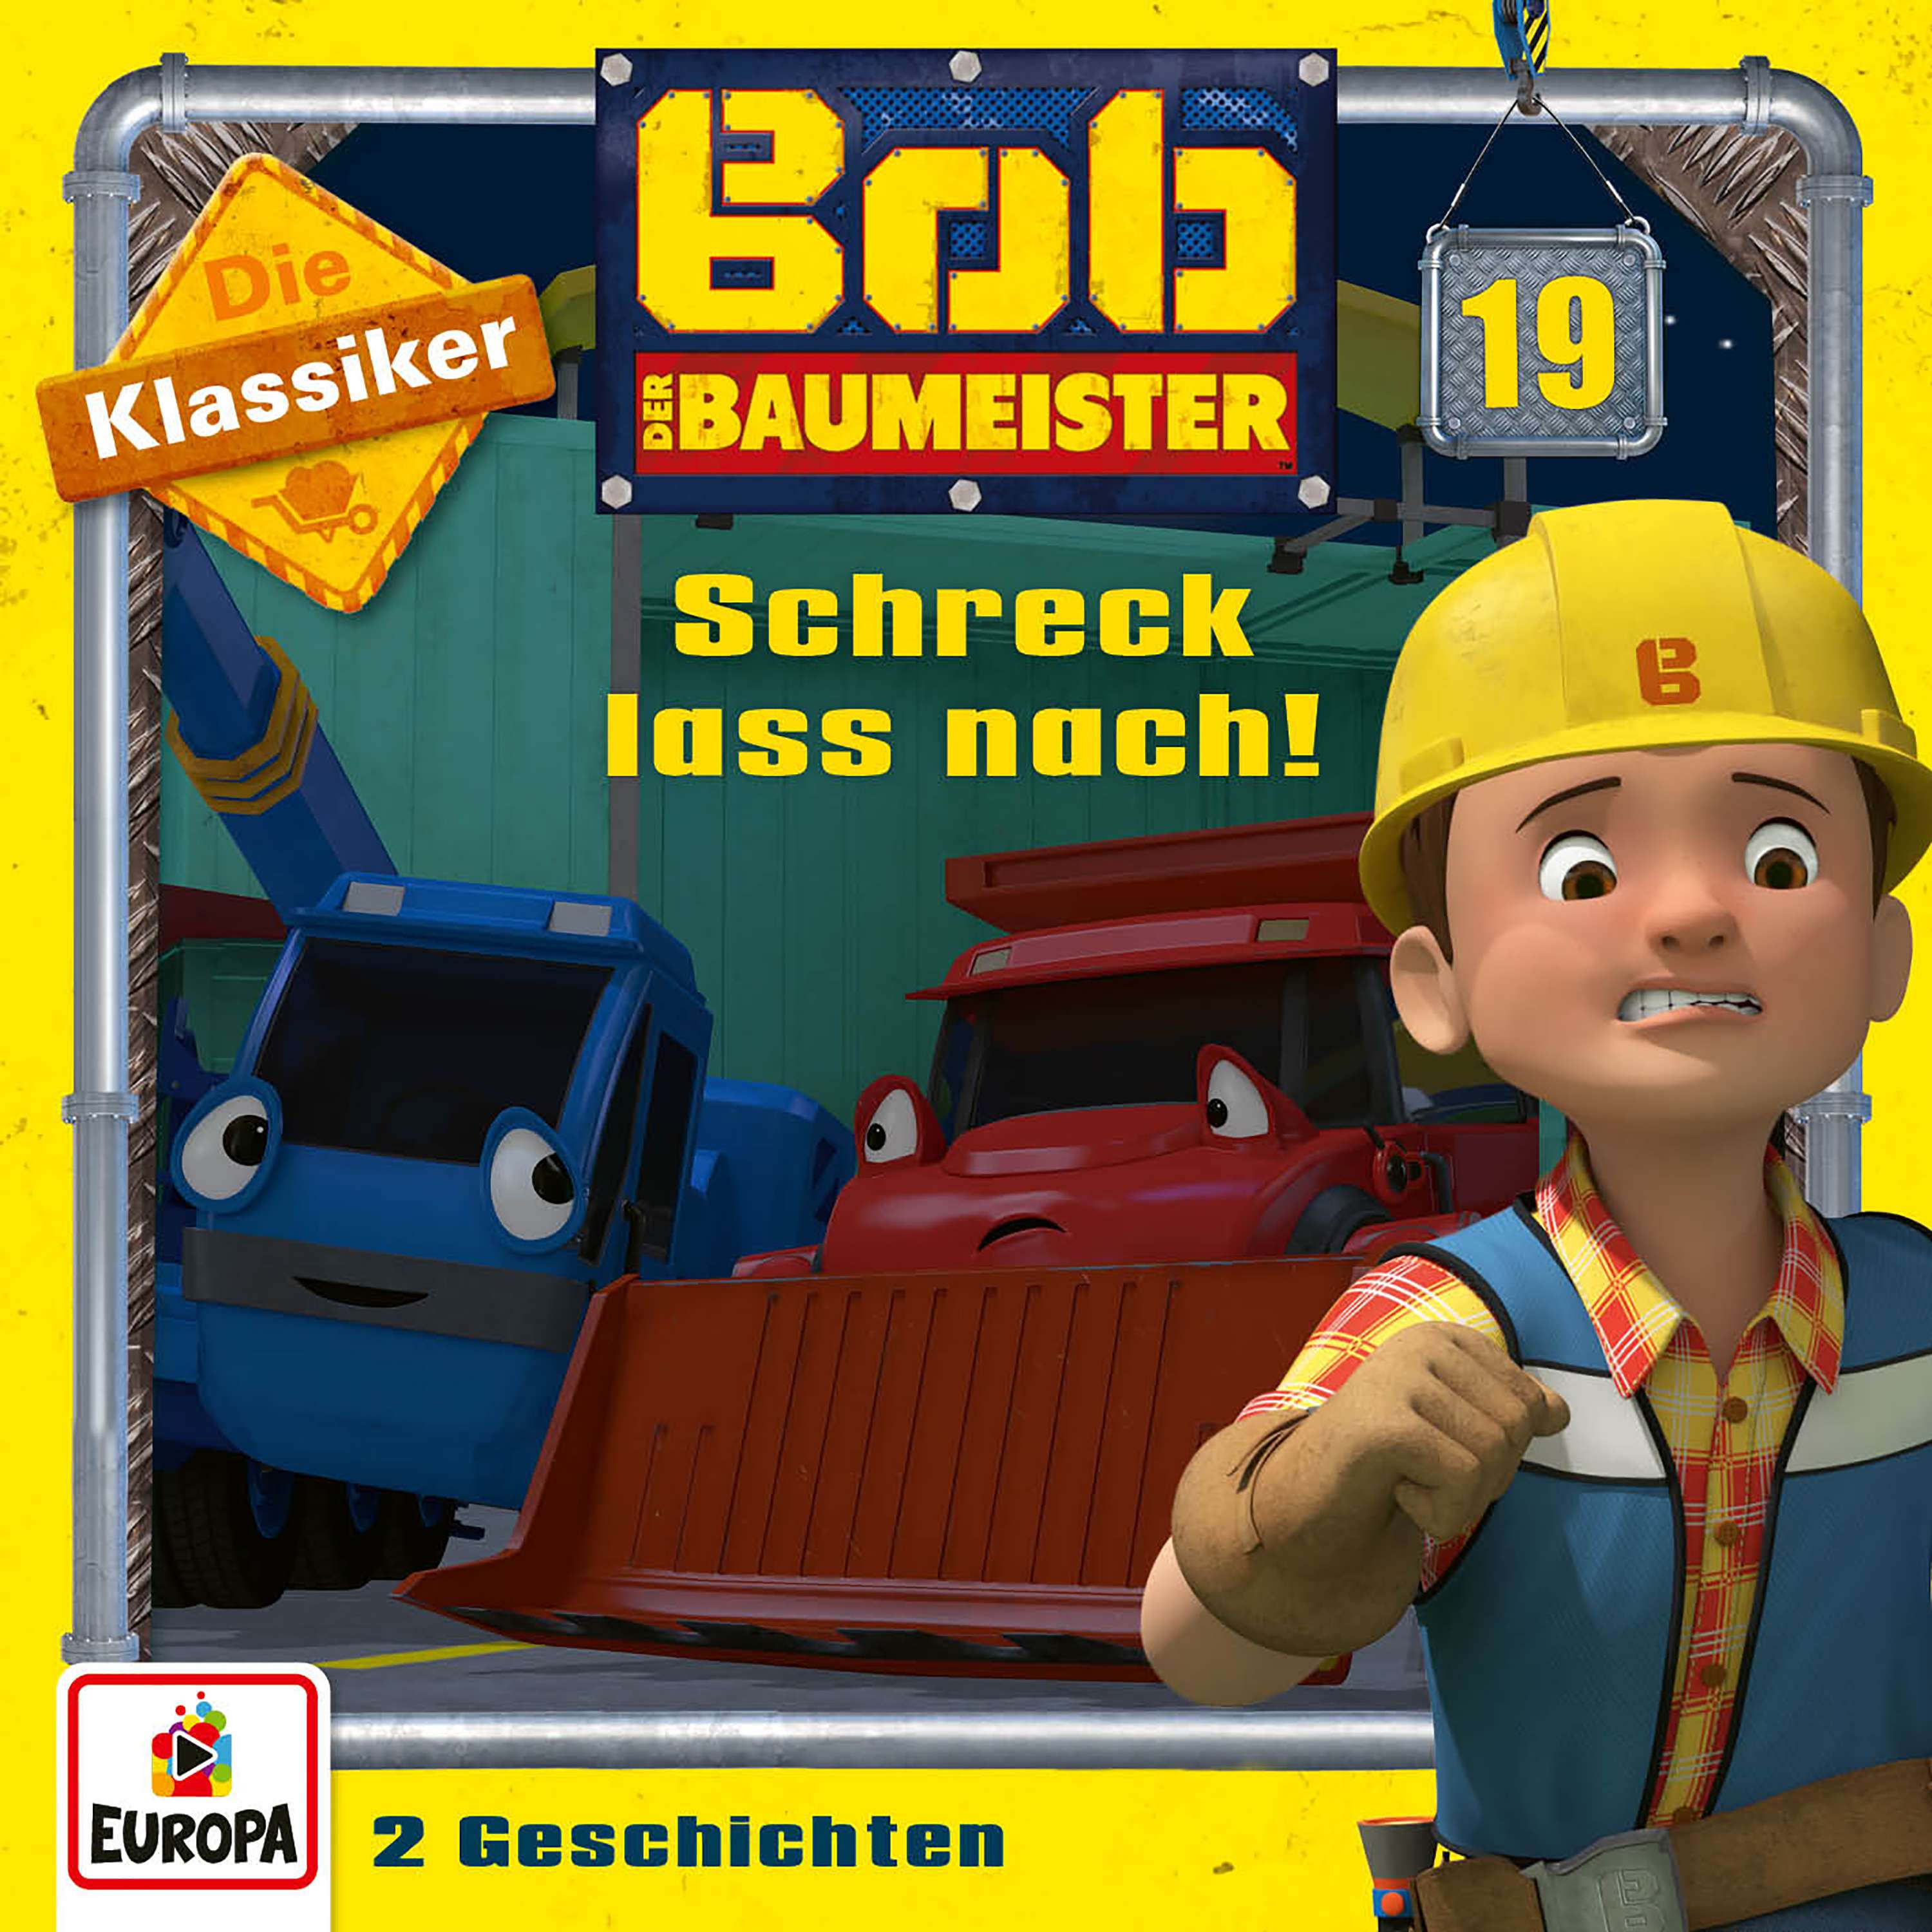 Bob der Baumeister: Schreck lass nach! (Die Klassiker)